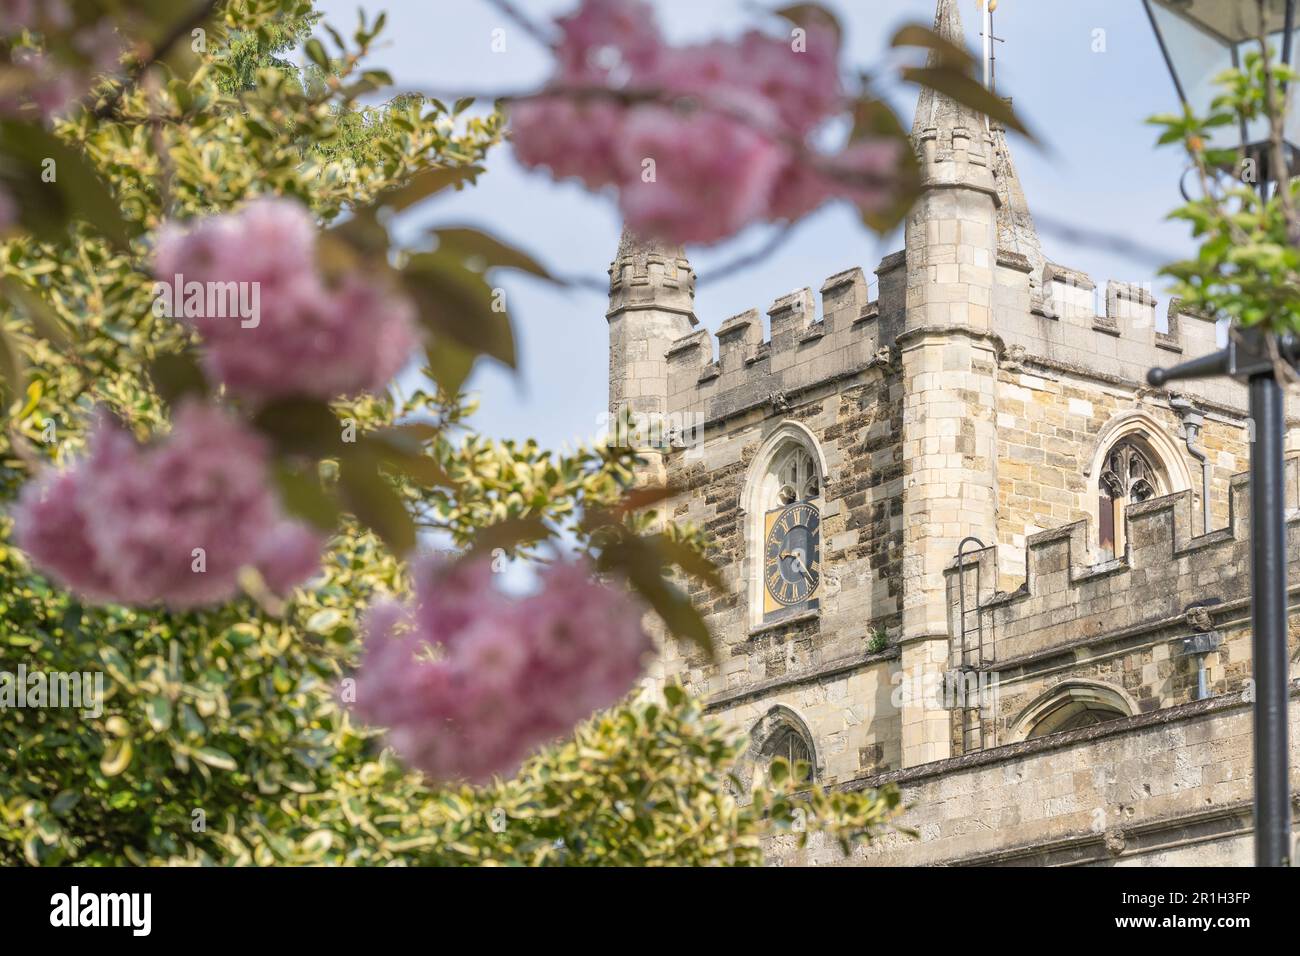 St. L'église de Michael avec de jolies fleurs de cerisier Kwanzan roses au printemps. Une église paroissiale anglicane de grade I est inscrite à Basingstoke, en Angleterre Banque D'Images